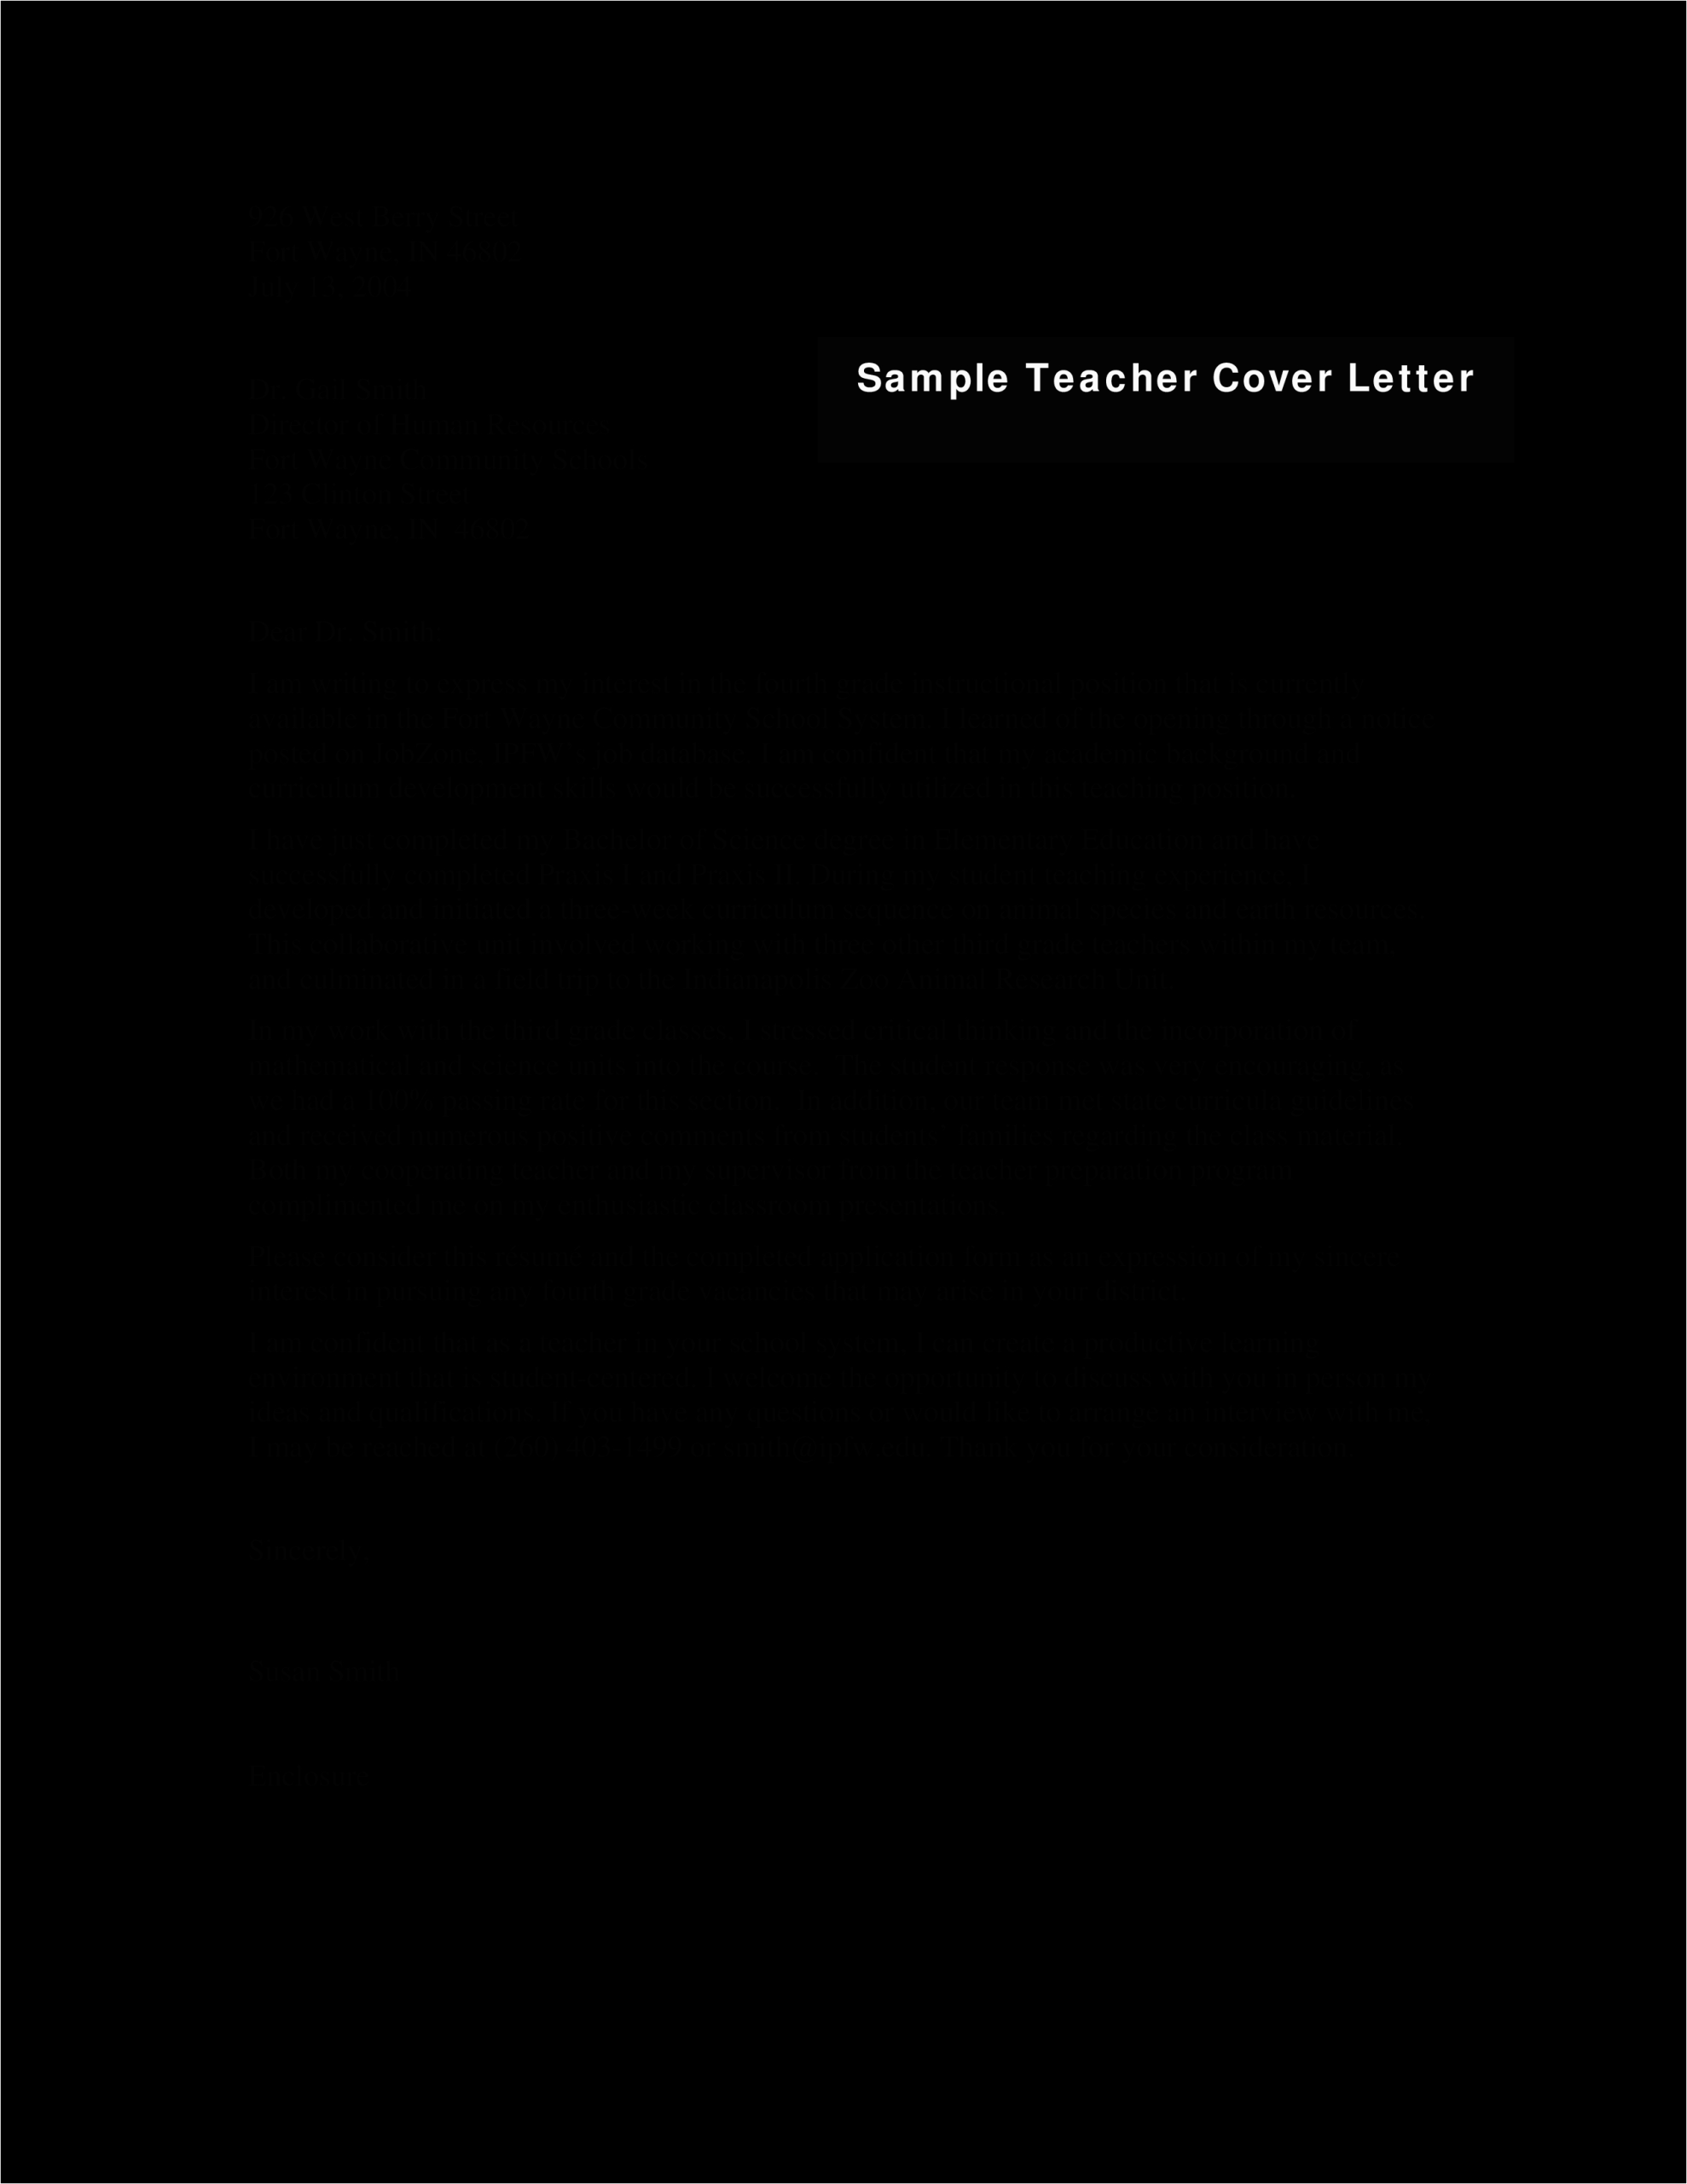 Resume Cover Letter Samples for Teaching Positions Teacher Job Resume Cover Letter